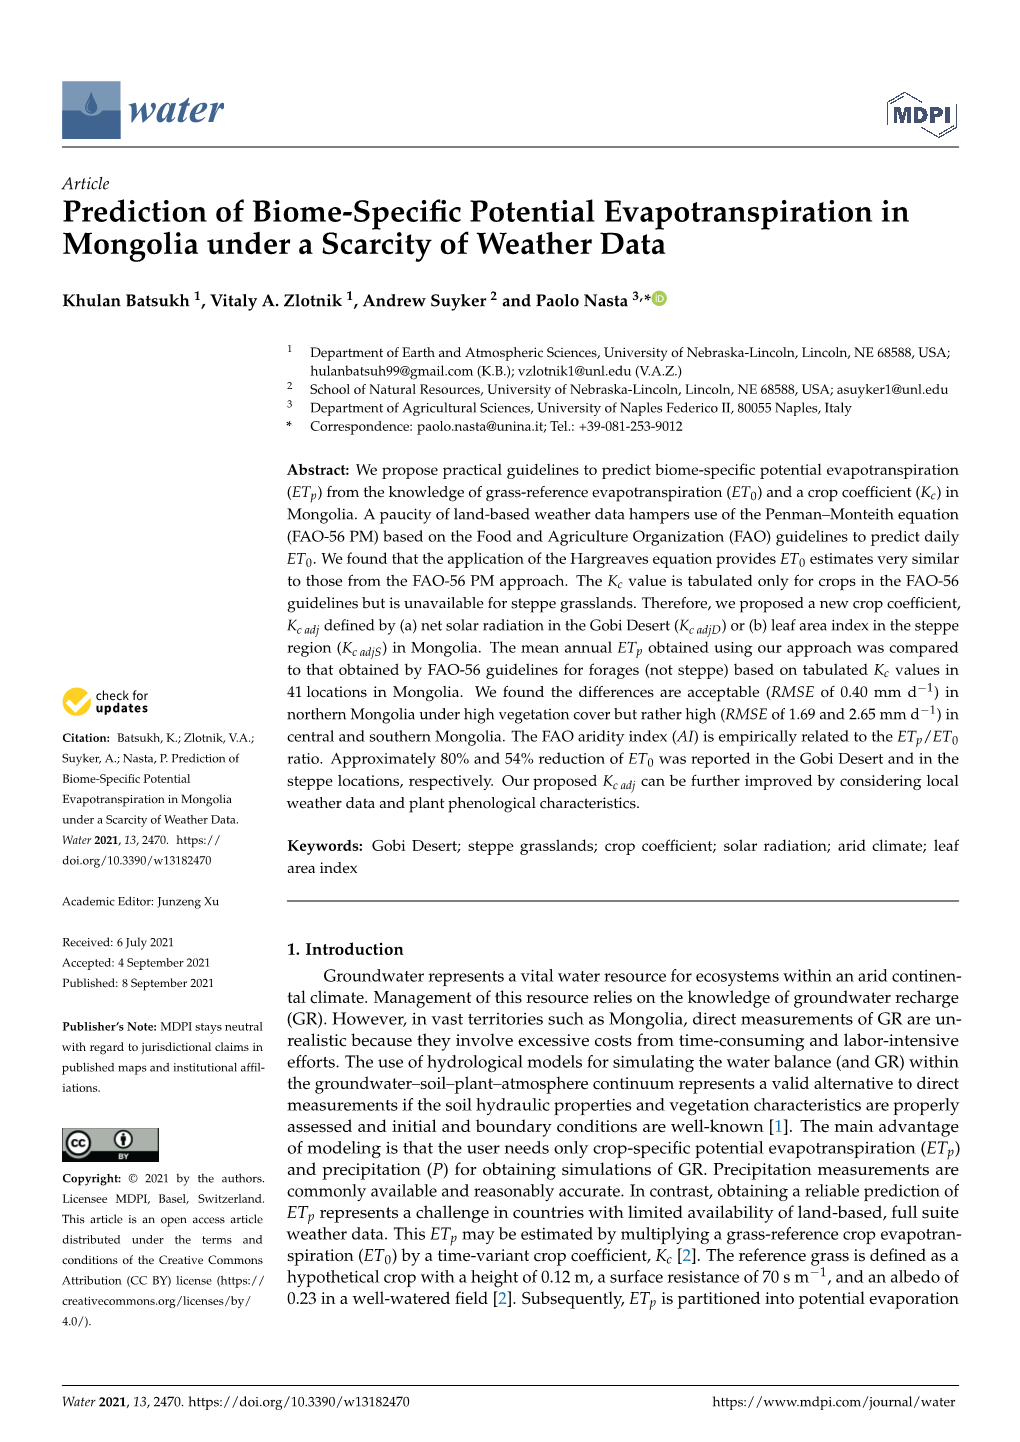 Prediction of Biome-Specific Potential Evapotranspiration in Mongolia